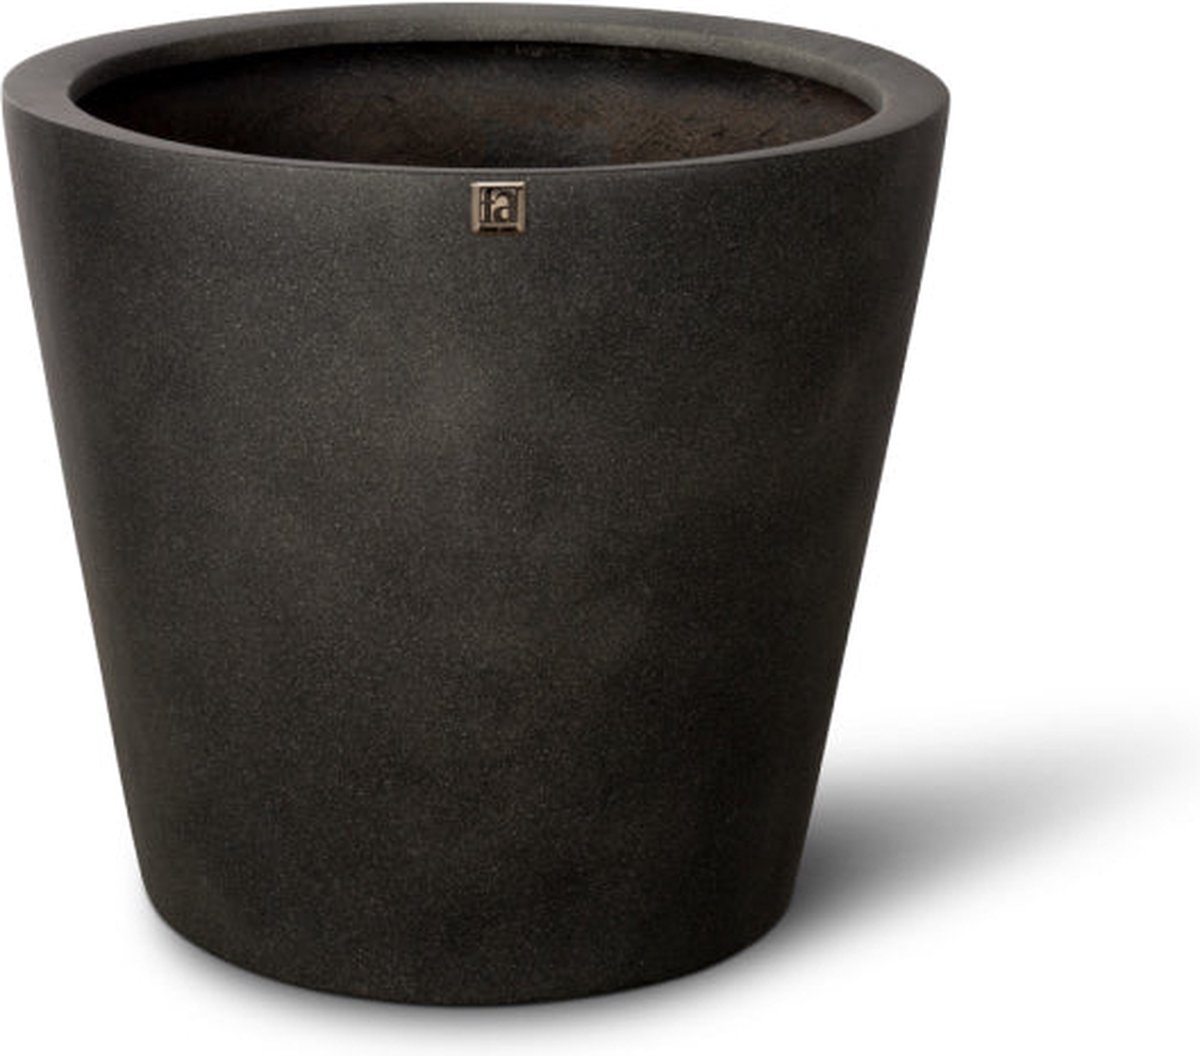 Luxe Plantenpot XL | Beton look | Bloembak voor buiten | Conical Plantenbak design | Antraciet / Zwart | 40 x 35 cm